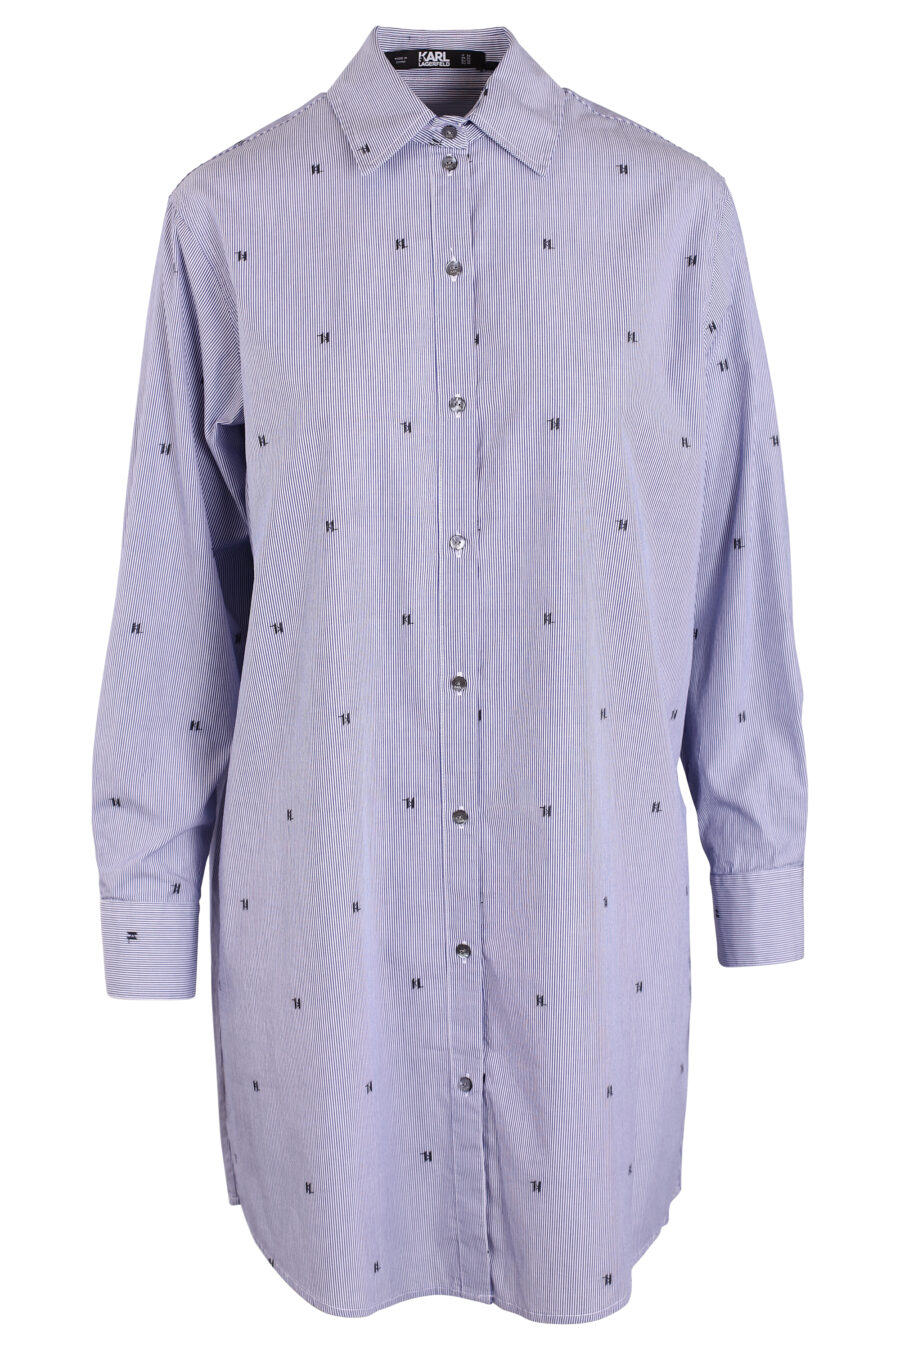 Chemise longue bleue avec mini "all over logo" - IMG 3427